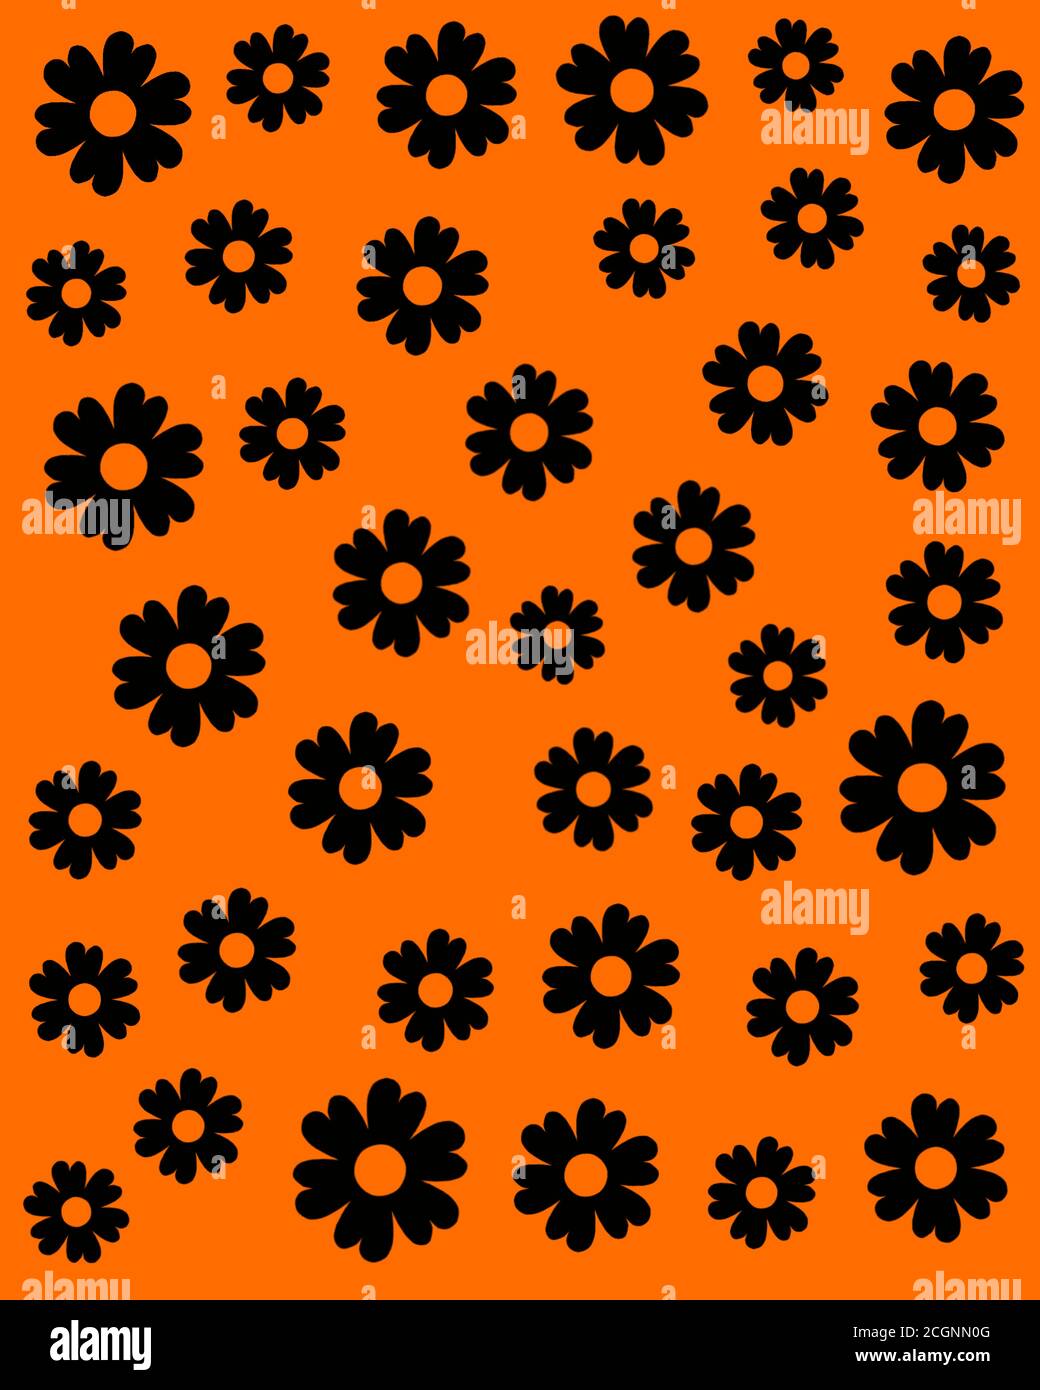 Motif floral noir sans couture imprimable isolé sur fond orange pour tissu, tissu, textile, design, motif. Brut vectoriel. Illustration de Vecteur